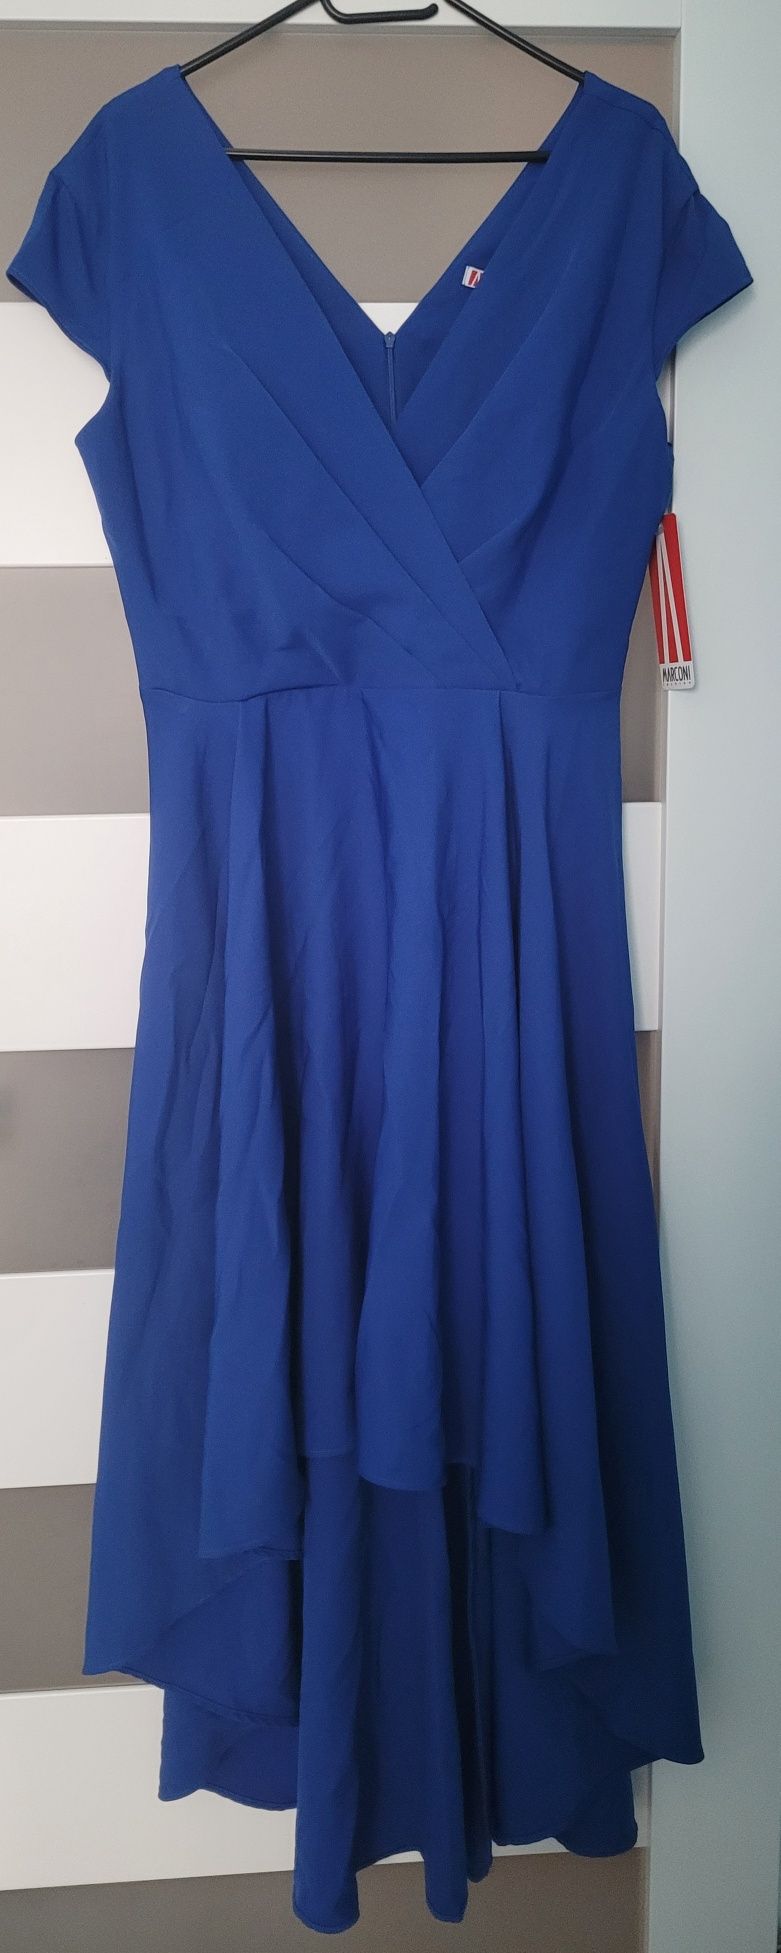 Nowa chabrowa sukienka niebieska asymetryczna wieczorowa xl 42 44 xxl